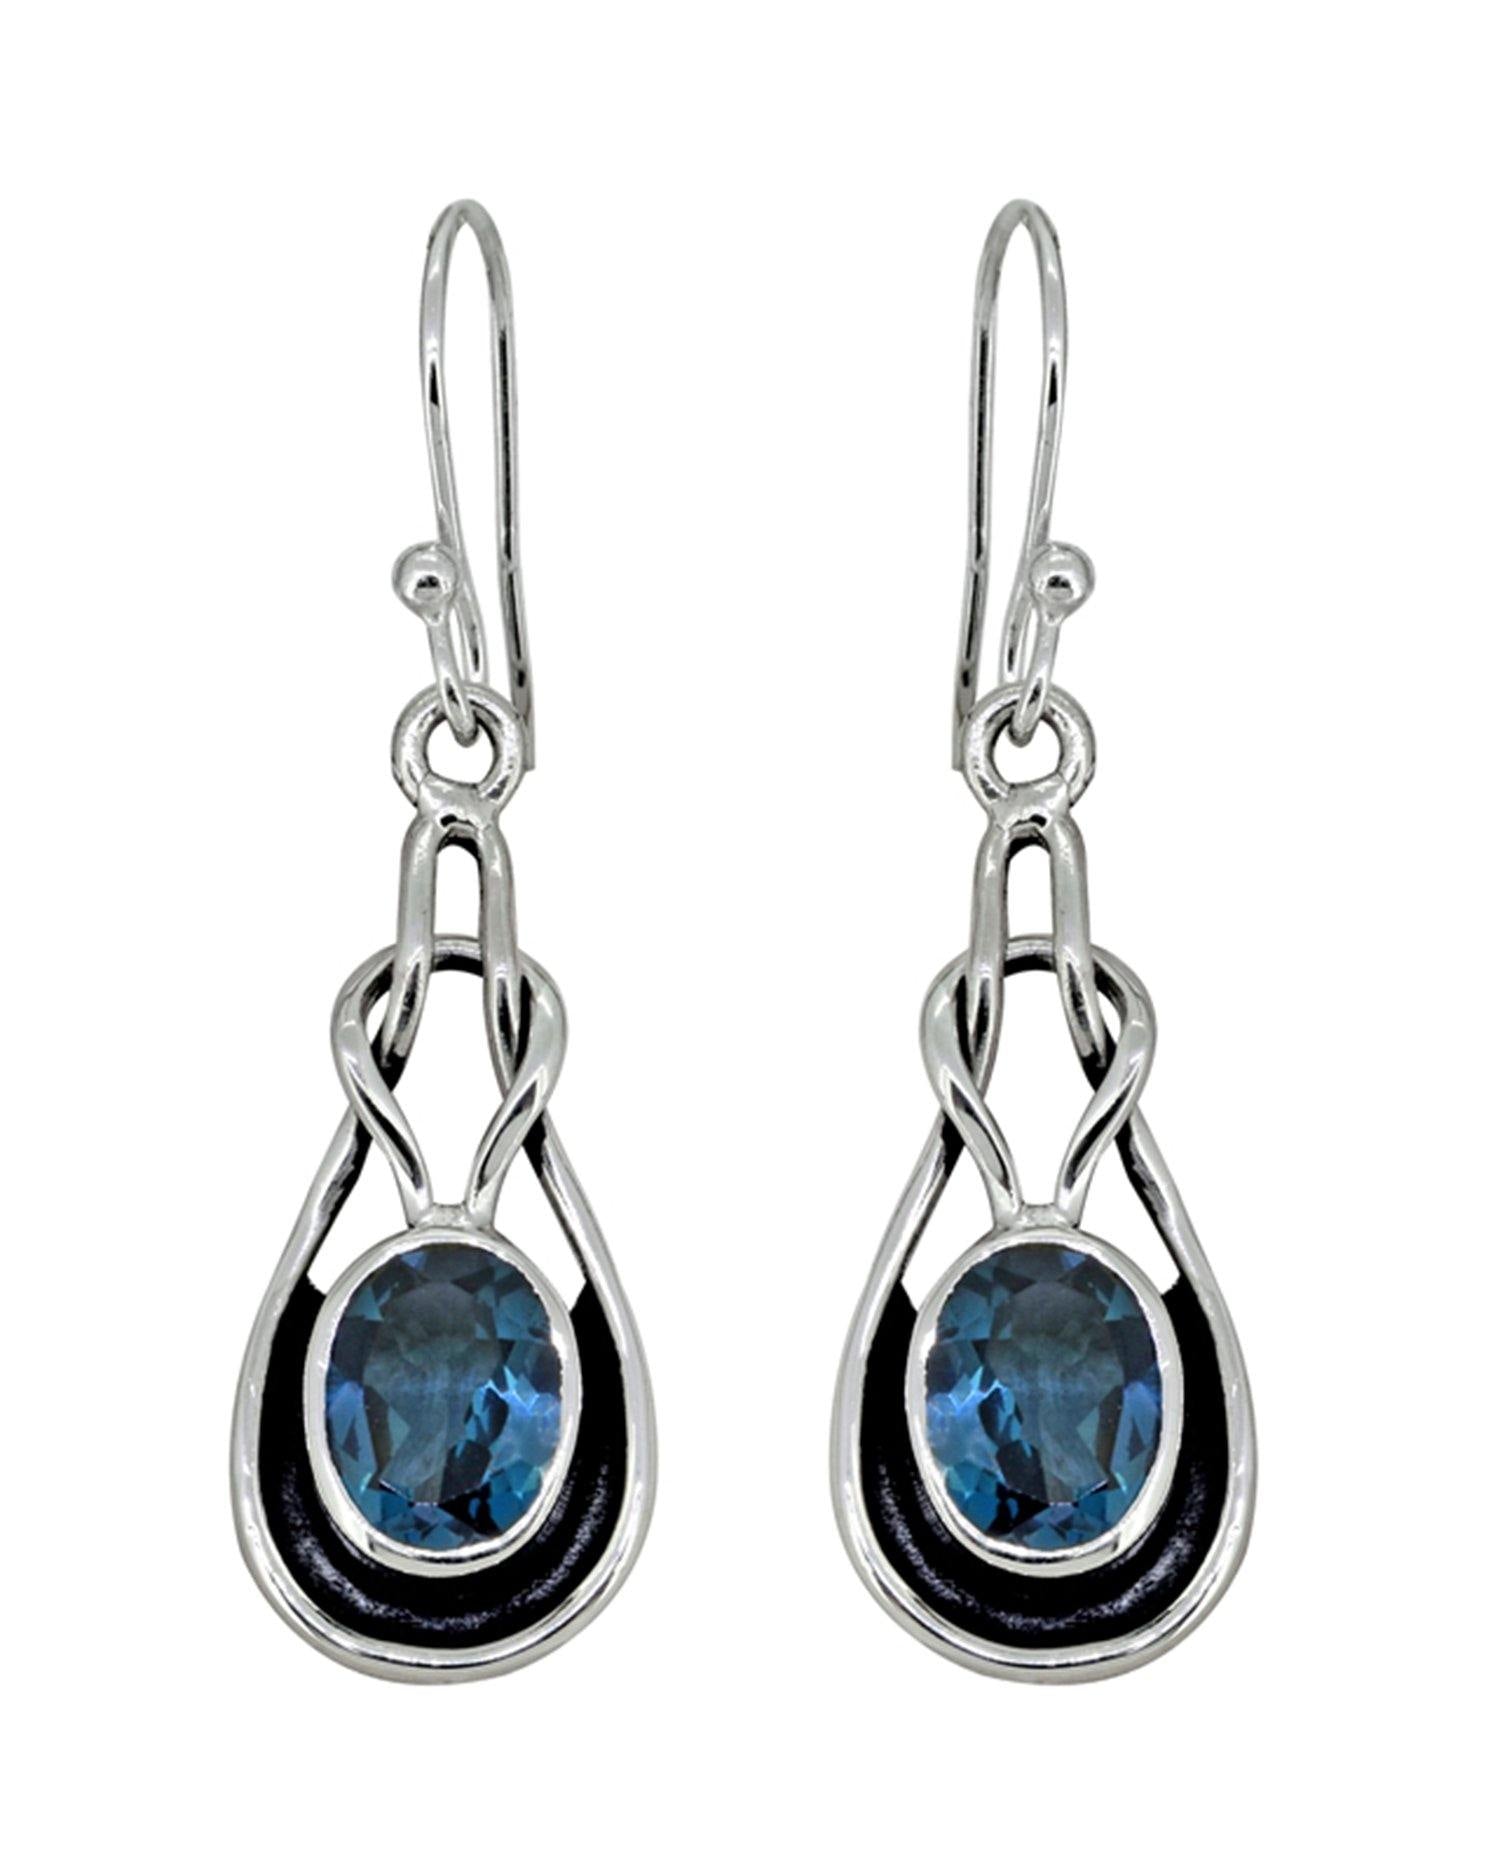 London Blue Topaz Solid 925 Sterling Silver Knot Dangle Earrings Jewelry - YoTreasure